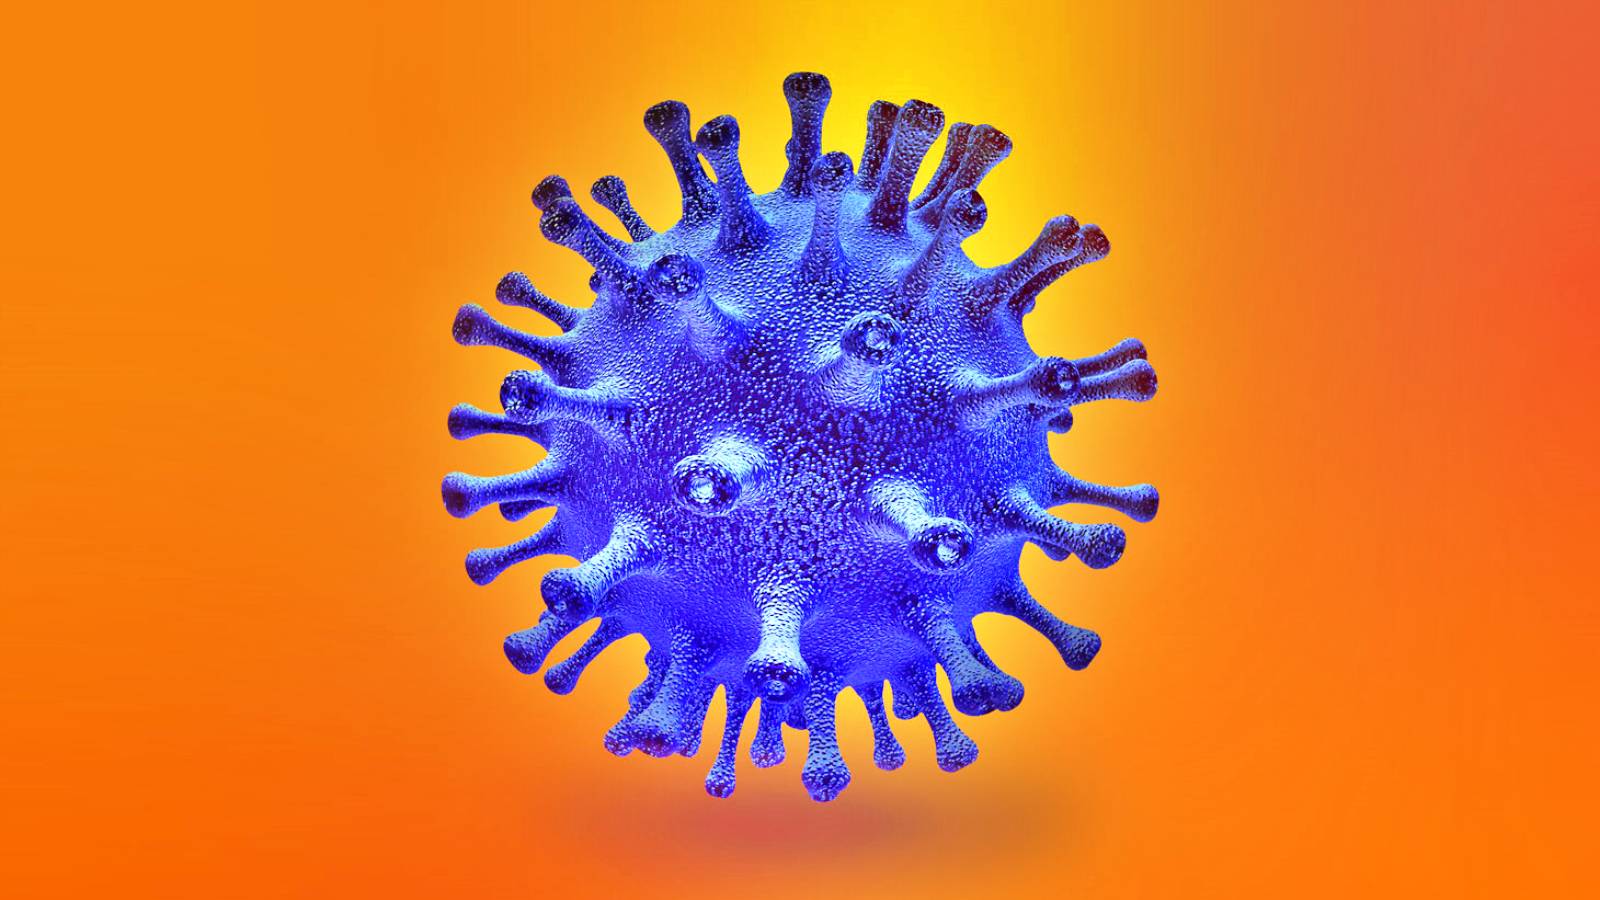 Peligro de exposición al COVID-19 de personas no vacunadas Infección